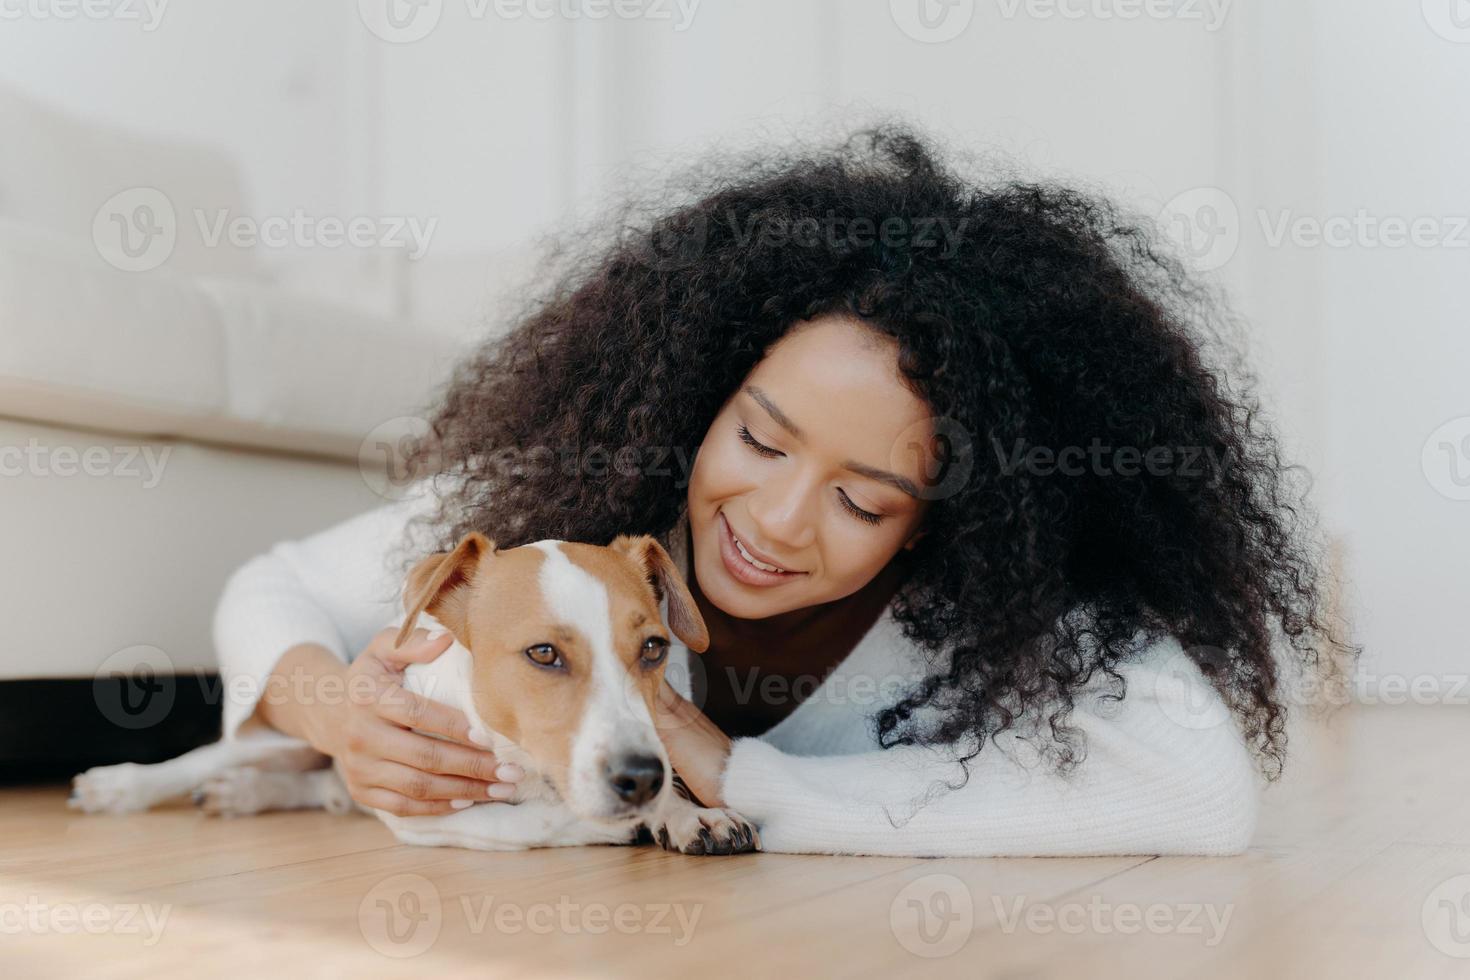 una mujer afro relajada con el pelo oscuro y crujiente yace en el suelo, juega con un lindo cachorro, se divierte con el perro jack russell terrier que usa un suéter blanco en la sala de estar. dueño feliz acariciando a un adorable animal doméstico foto